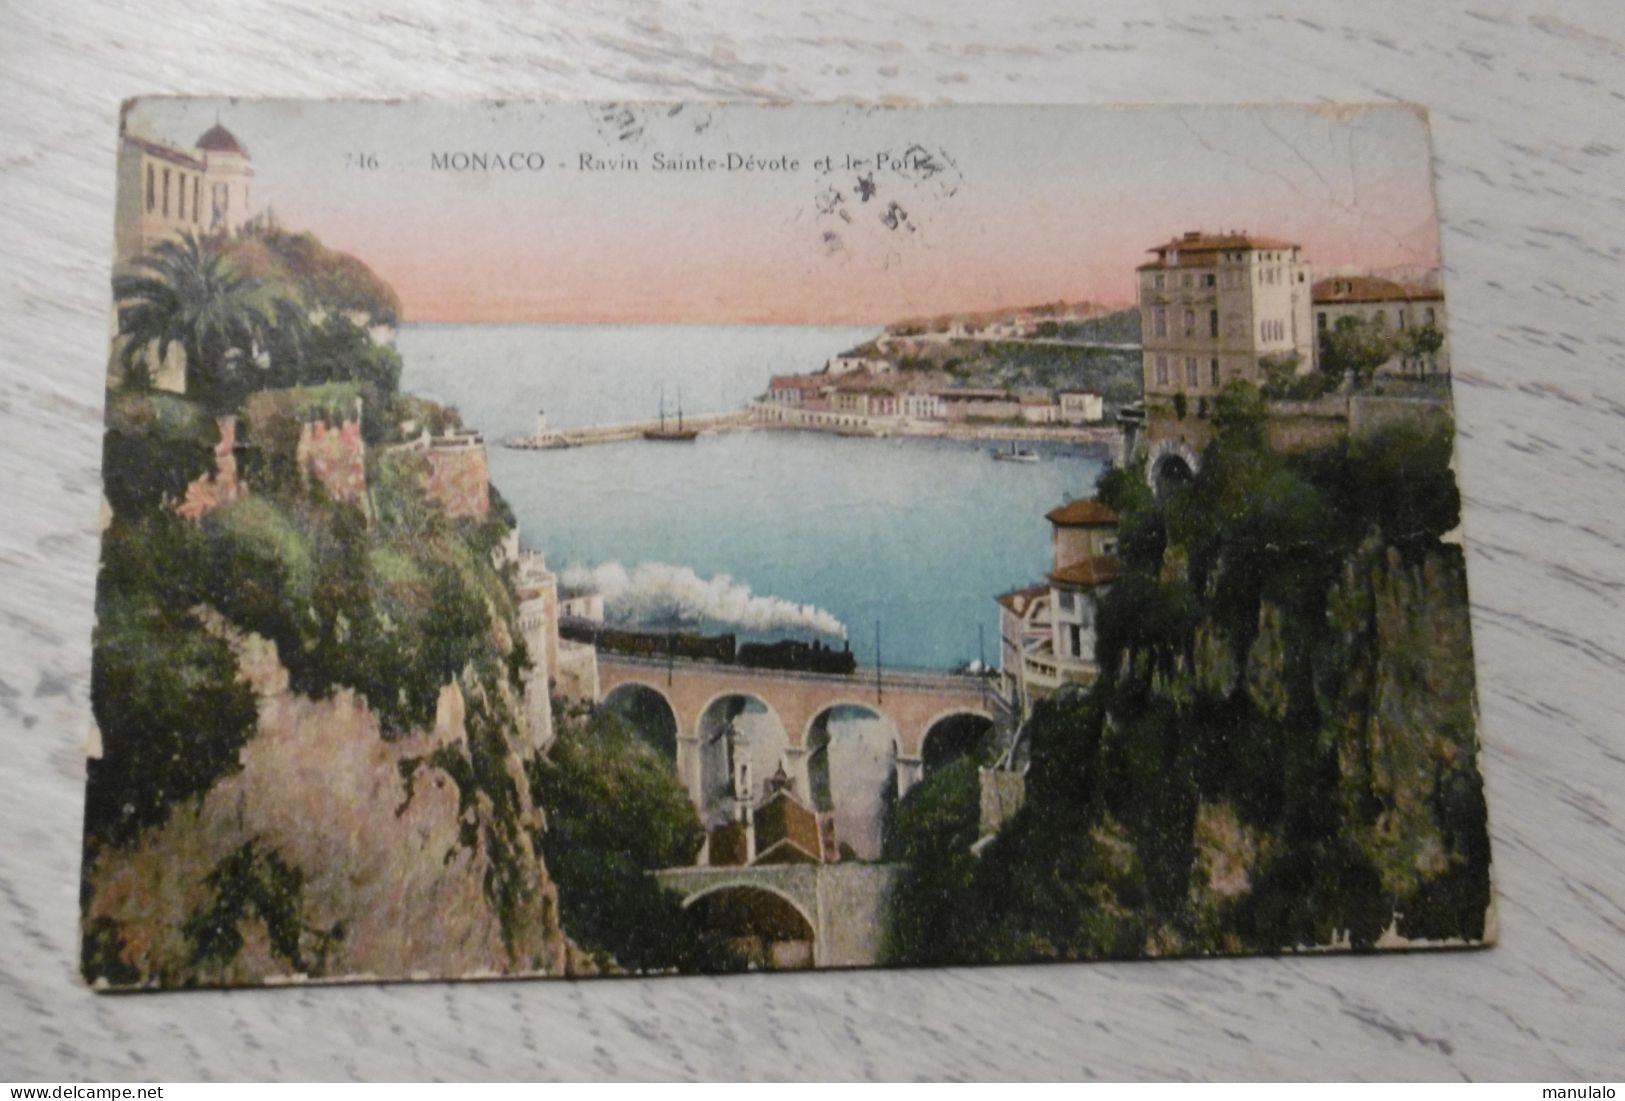 Monaco - Ravin Sainte Dévote Et Le Port - Port